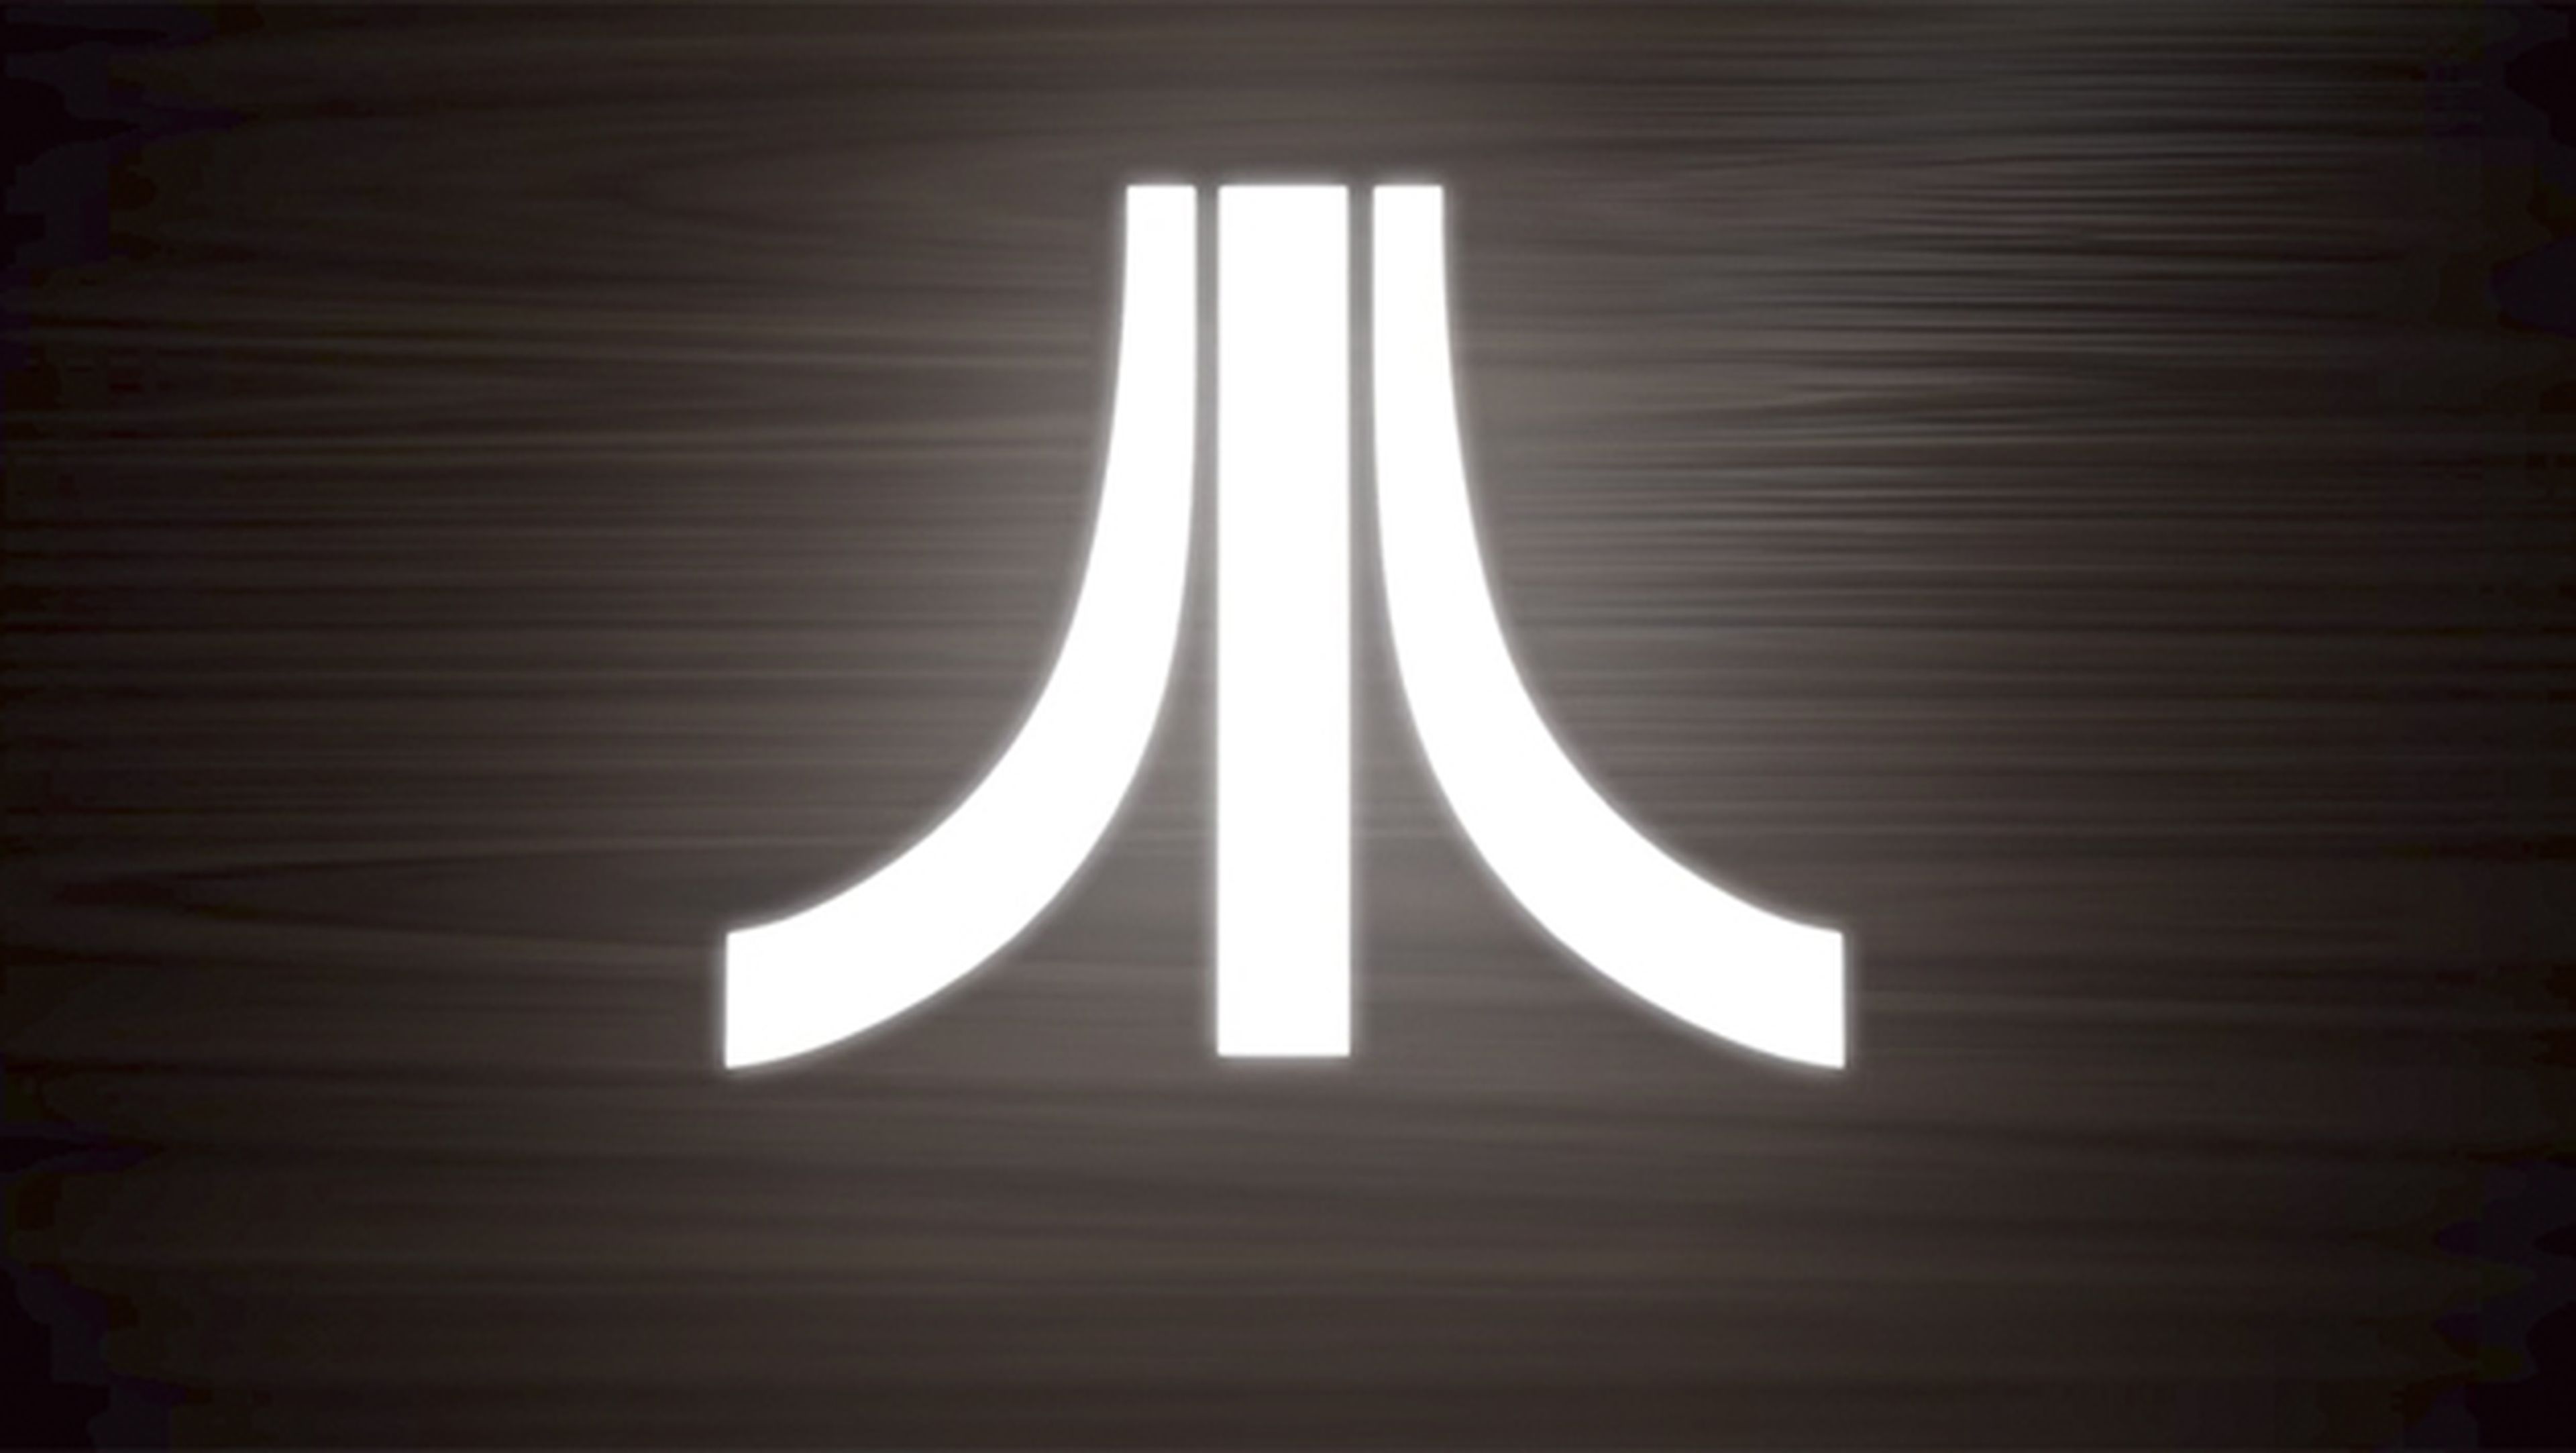 Ataribox, ¿nueva consola de Atari a la vista?